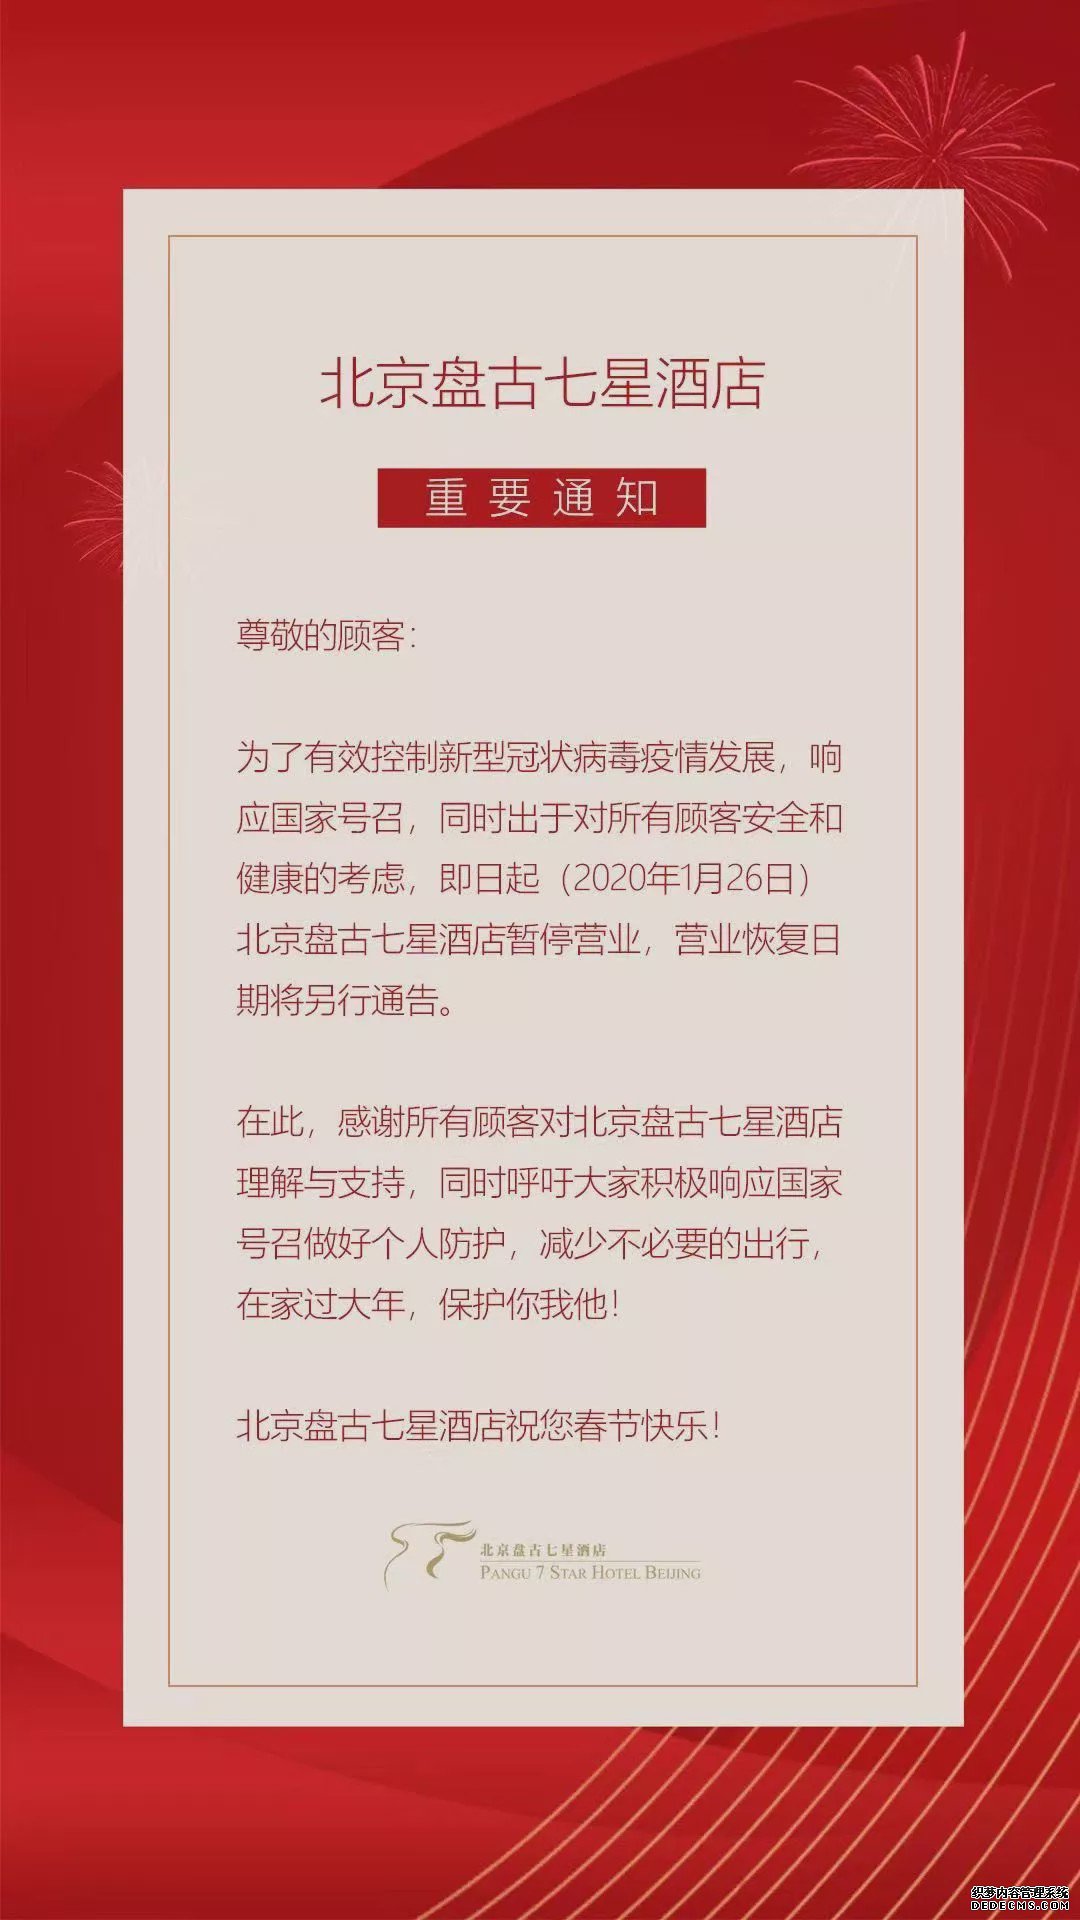 北京盘古七星酒店暂停营业 恢复日期将另行通告